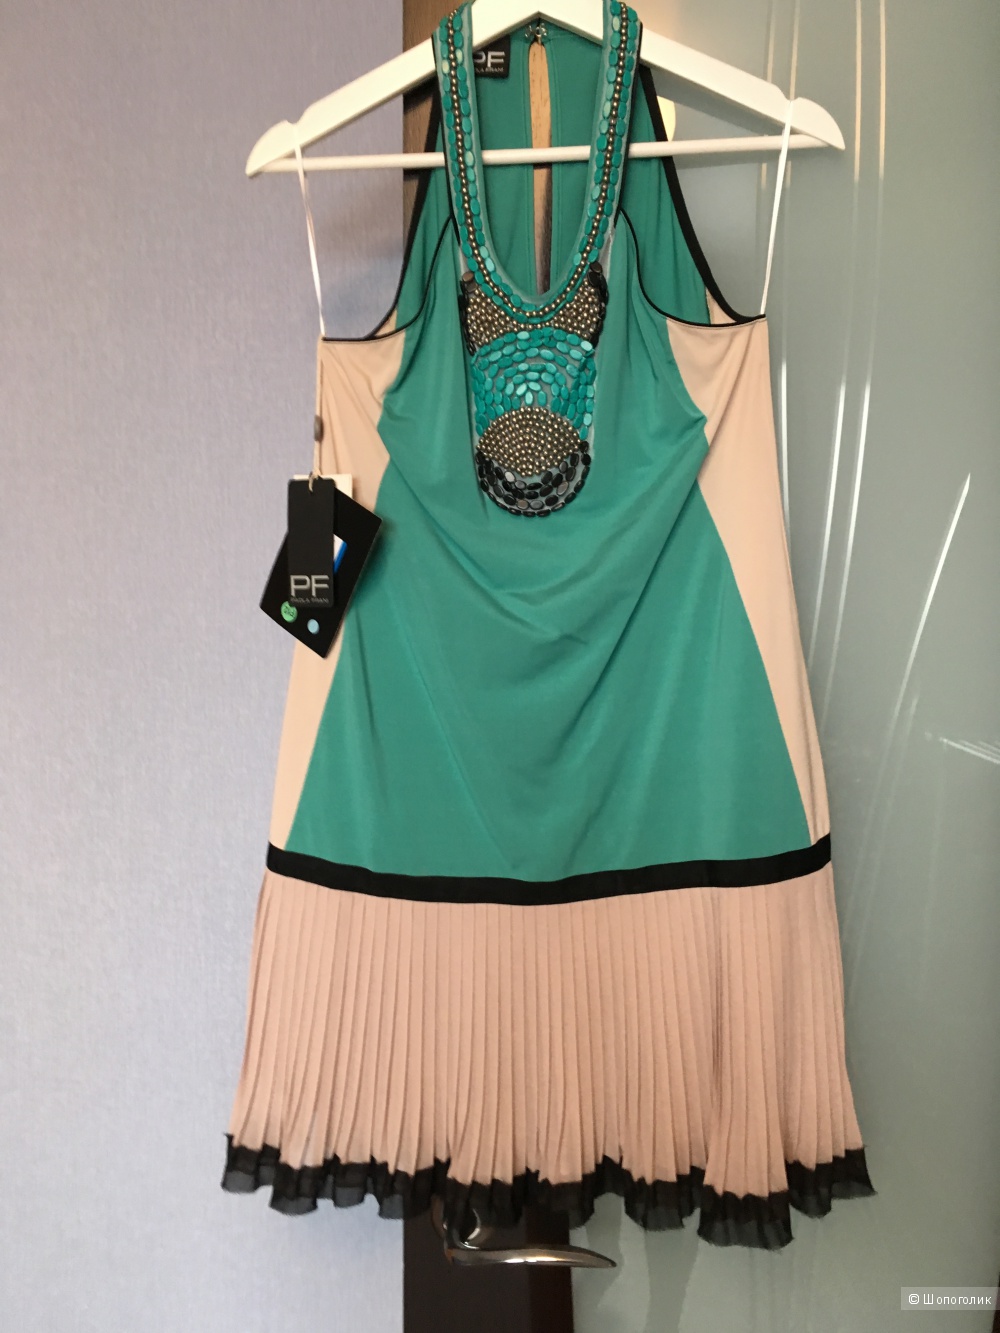 Платье PF PAOLA FRANI, с YOOX, новое, 42 ит размер, расшито украшениями.